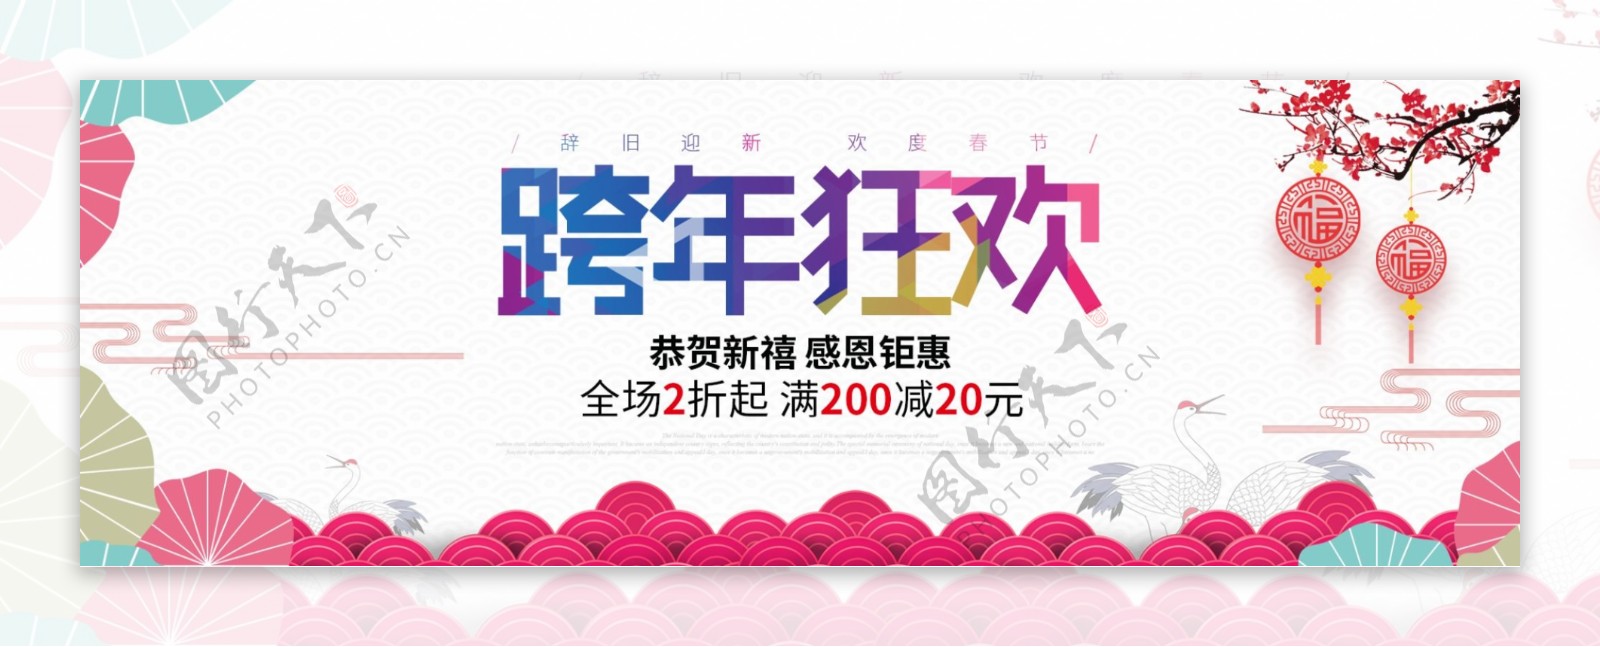 浅色灯笼跨年狂欢新年海报促销banner